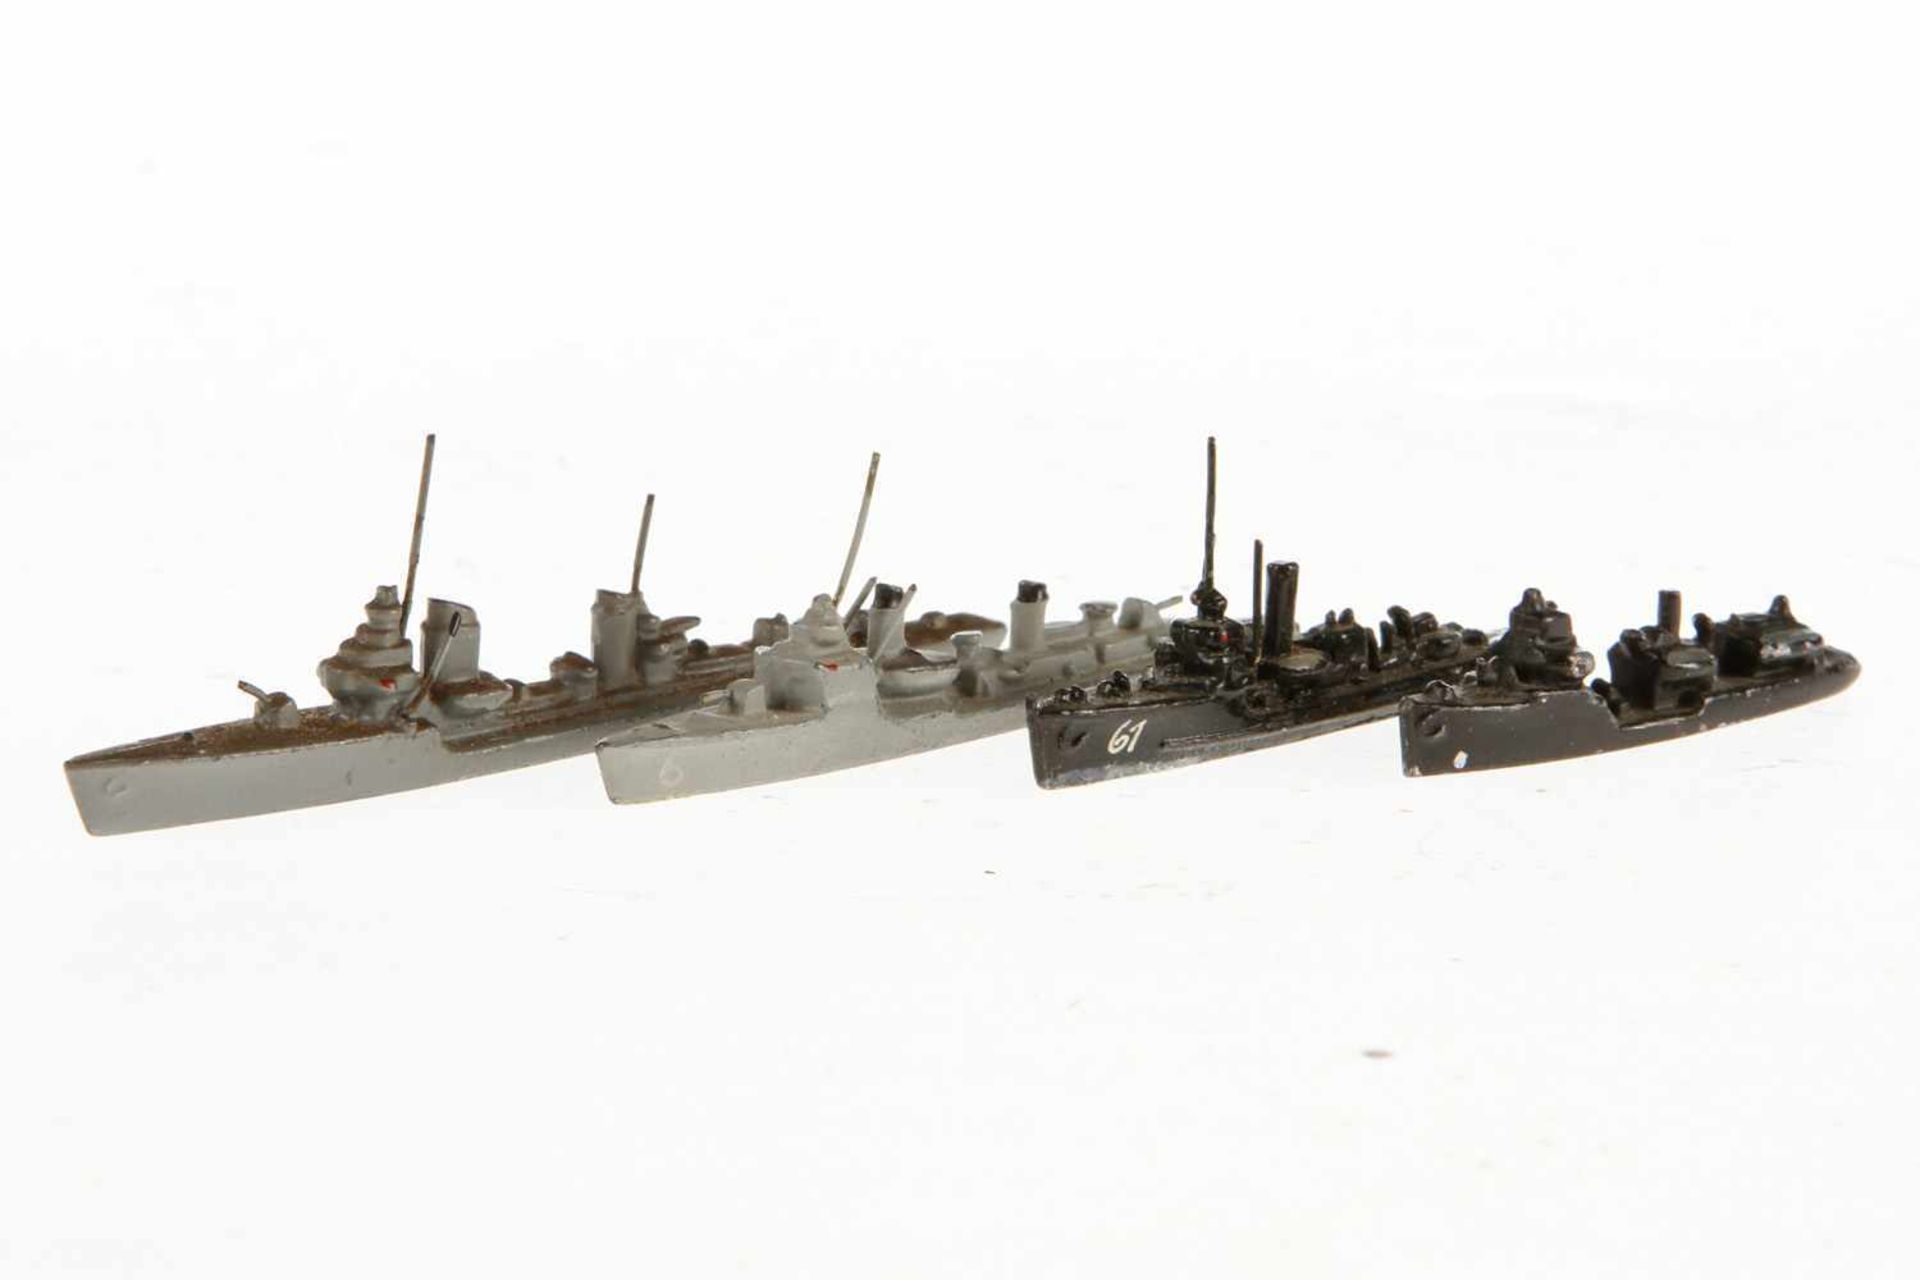 Konv. 4 Wiking Modellschiffe, Guss: Torpedoboot "Raubtier Kl.", Flottenbegleiter "6", Sperrboot "MT"